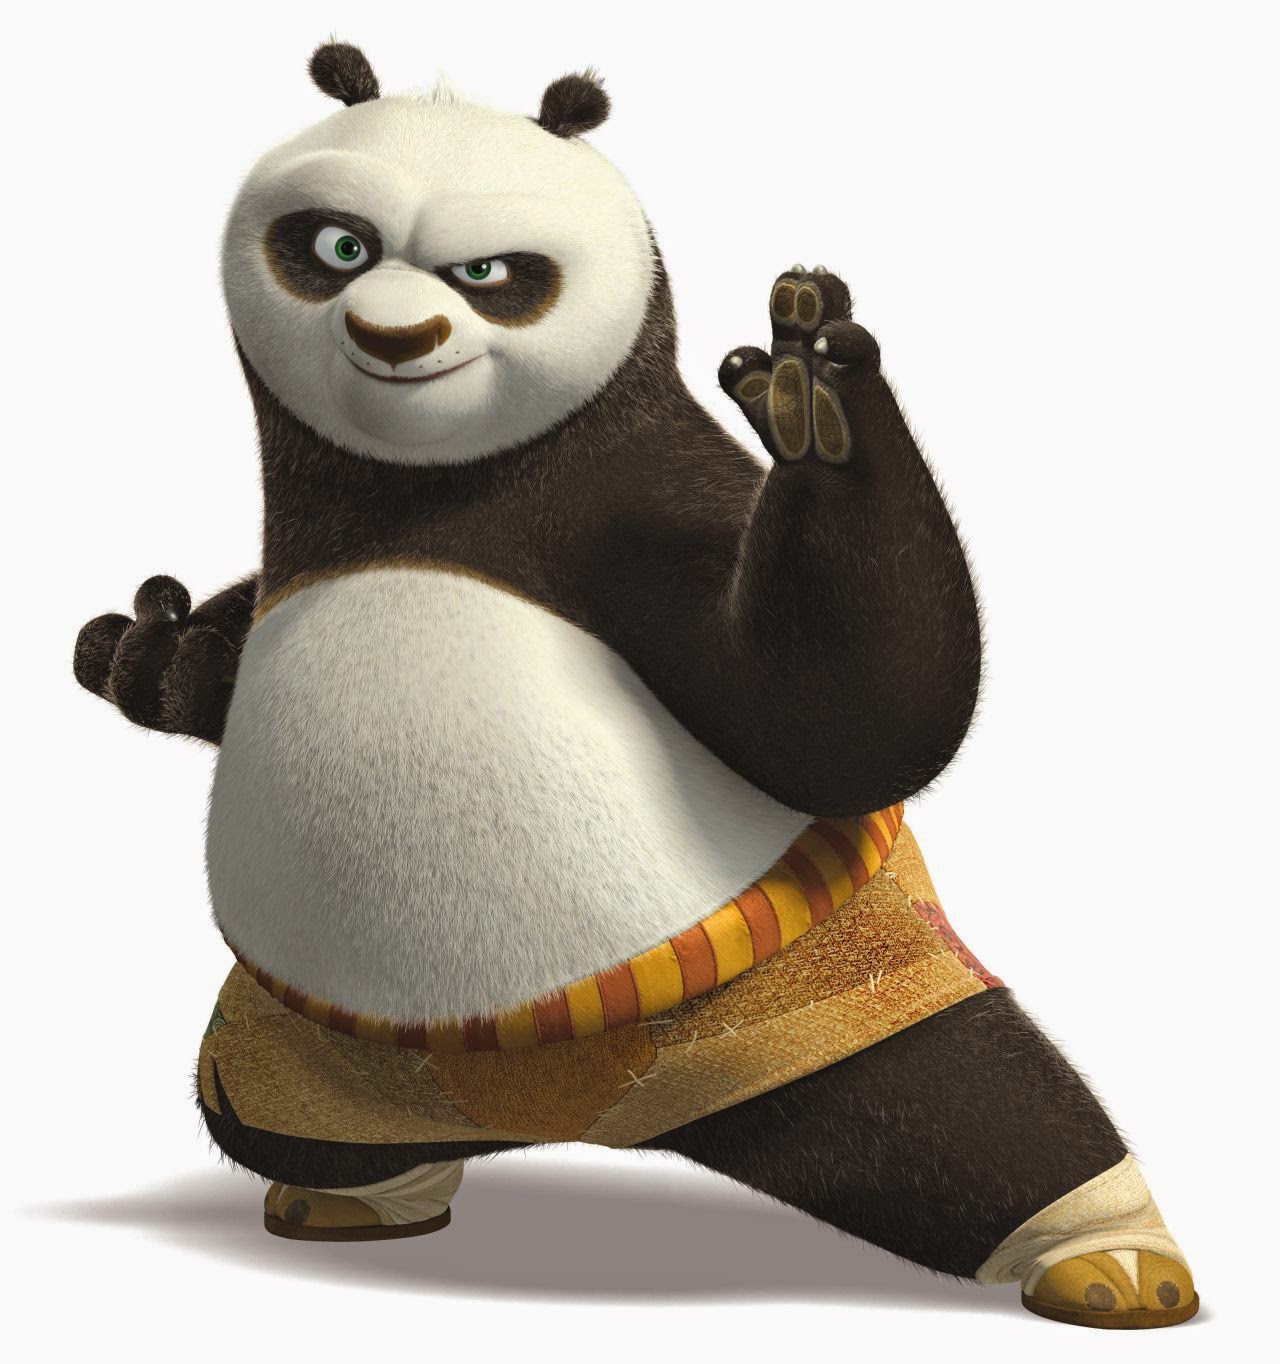 Kumpulan Gambar Kung Fu Panda Gambar Lucu Terbaru Cartoon